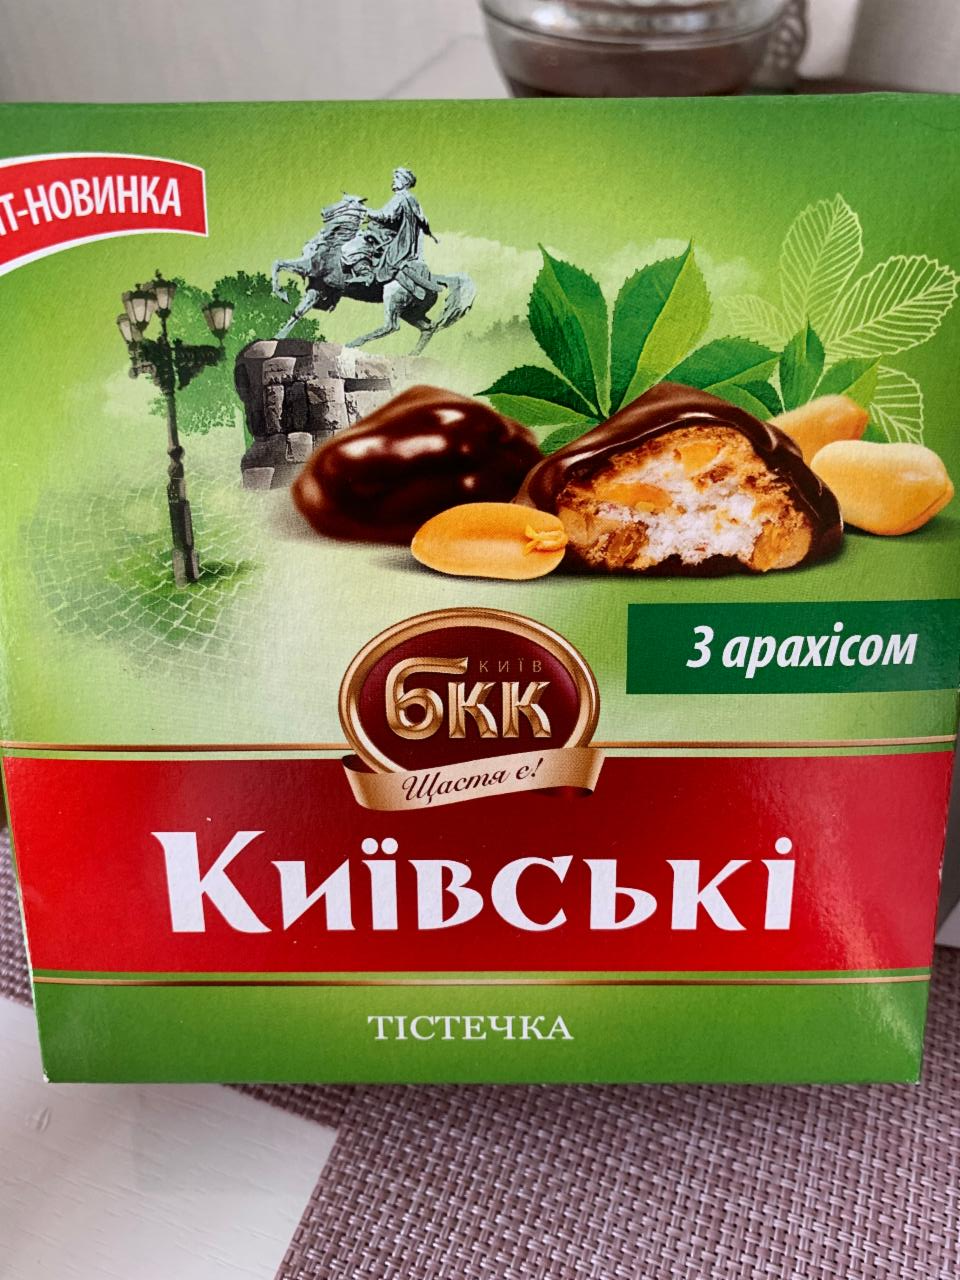 Фото - киевские пирожные с арахисом БКК